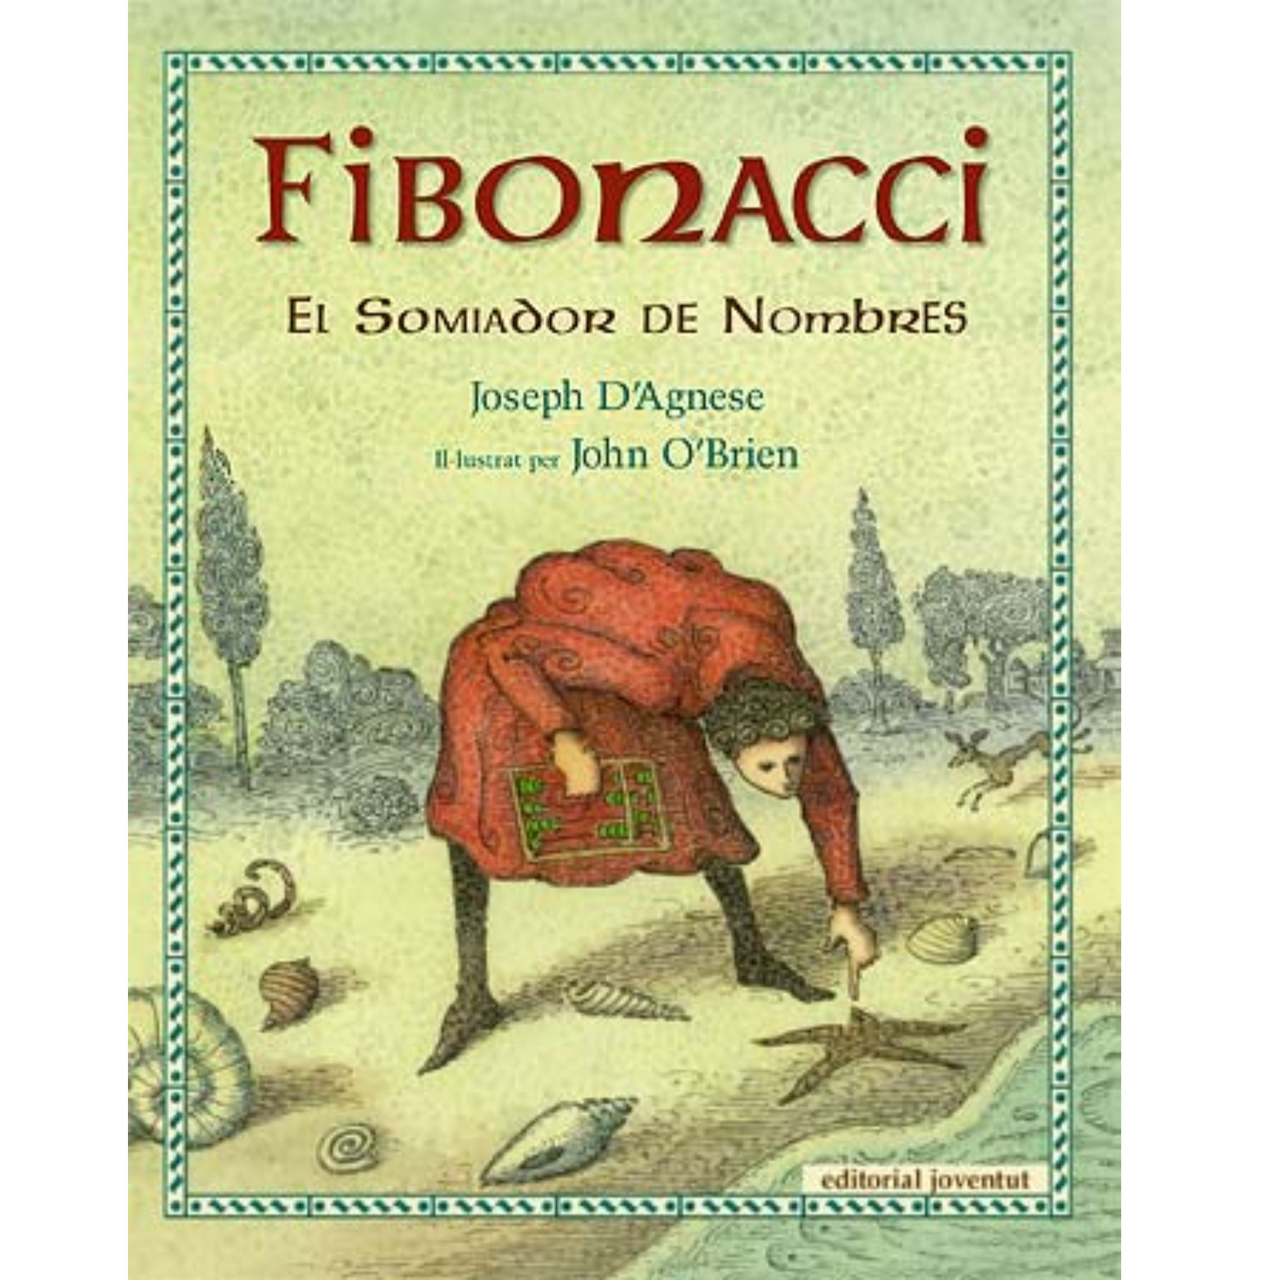 Fibonacci, el Somiador de Nombres